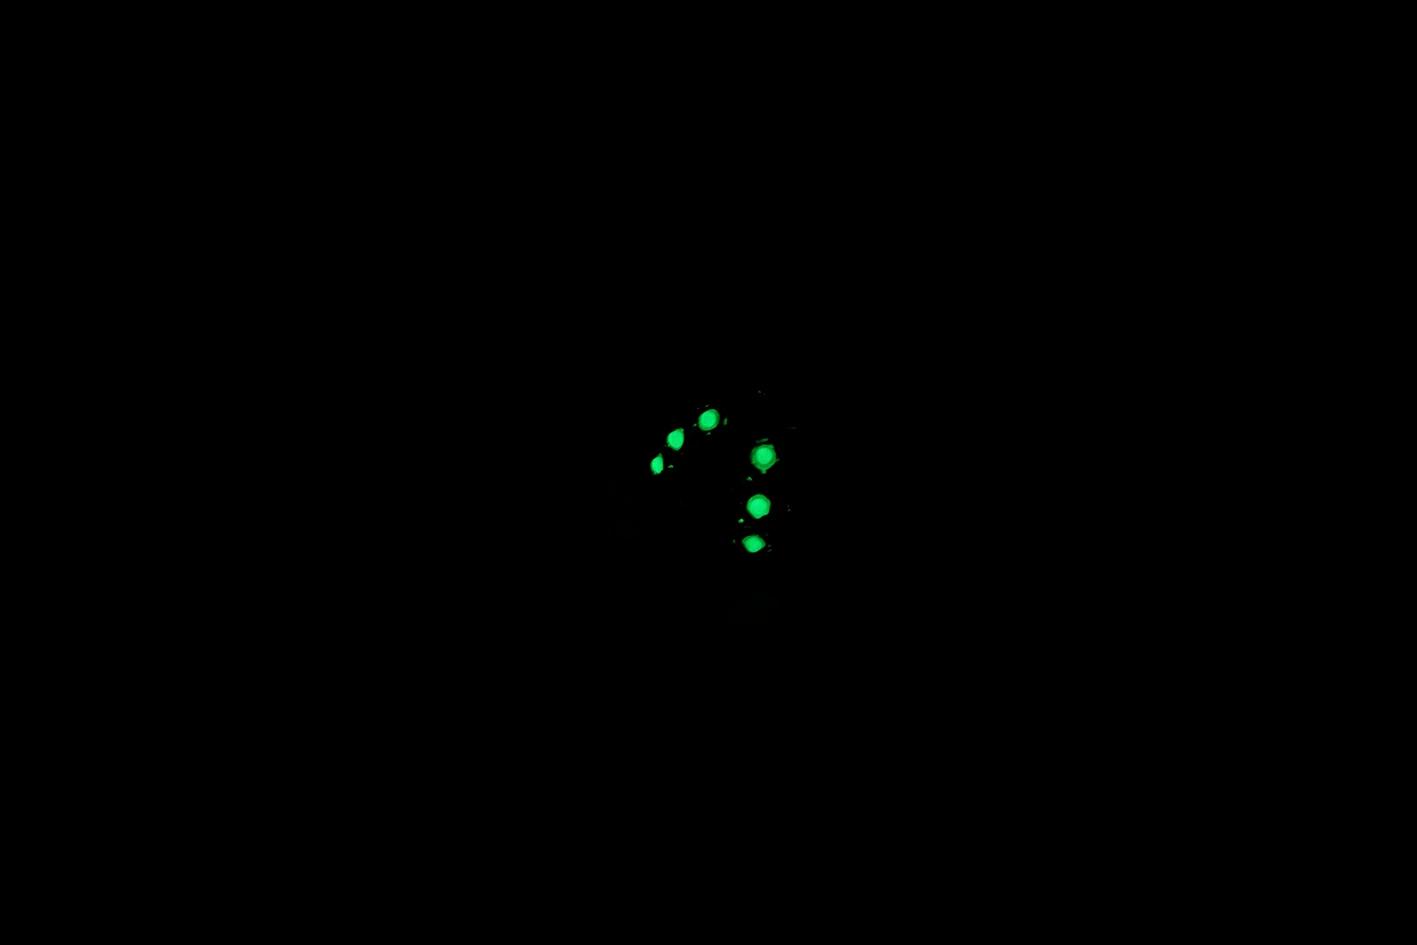 
『輝石の光』ルナウェア てんとう虫タックピン スワロフスキー使用 蓄光アクセサリー 光るアクセサリー 夜光
